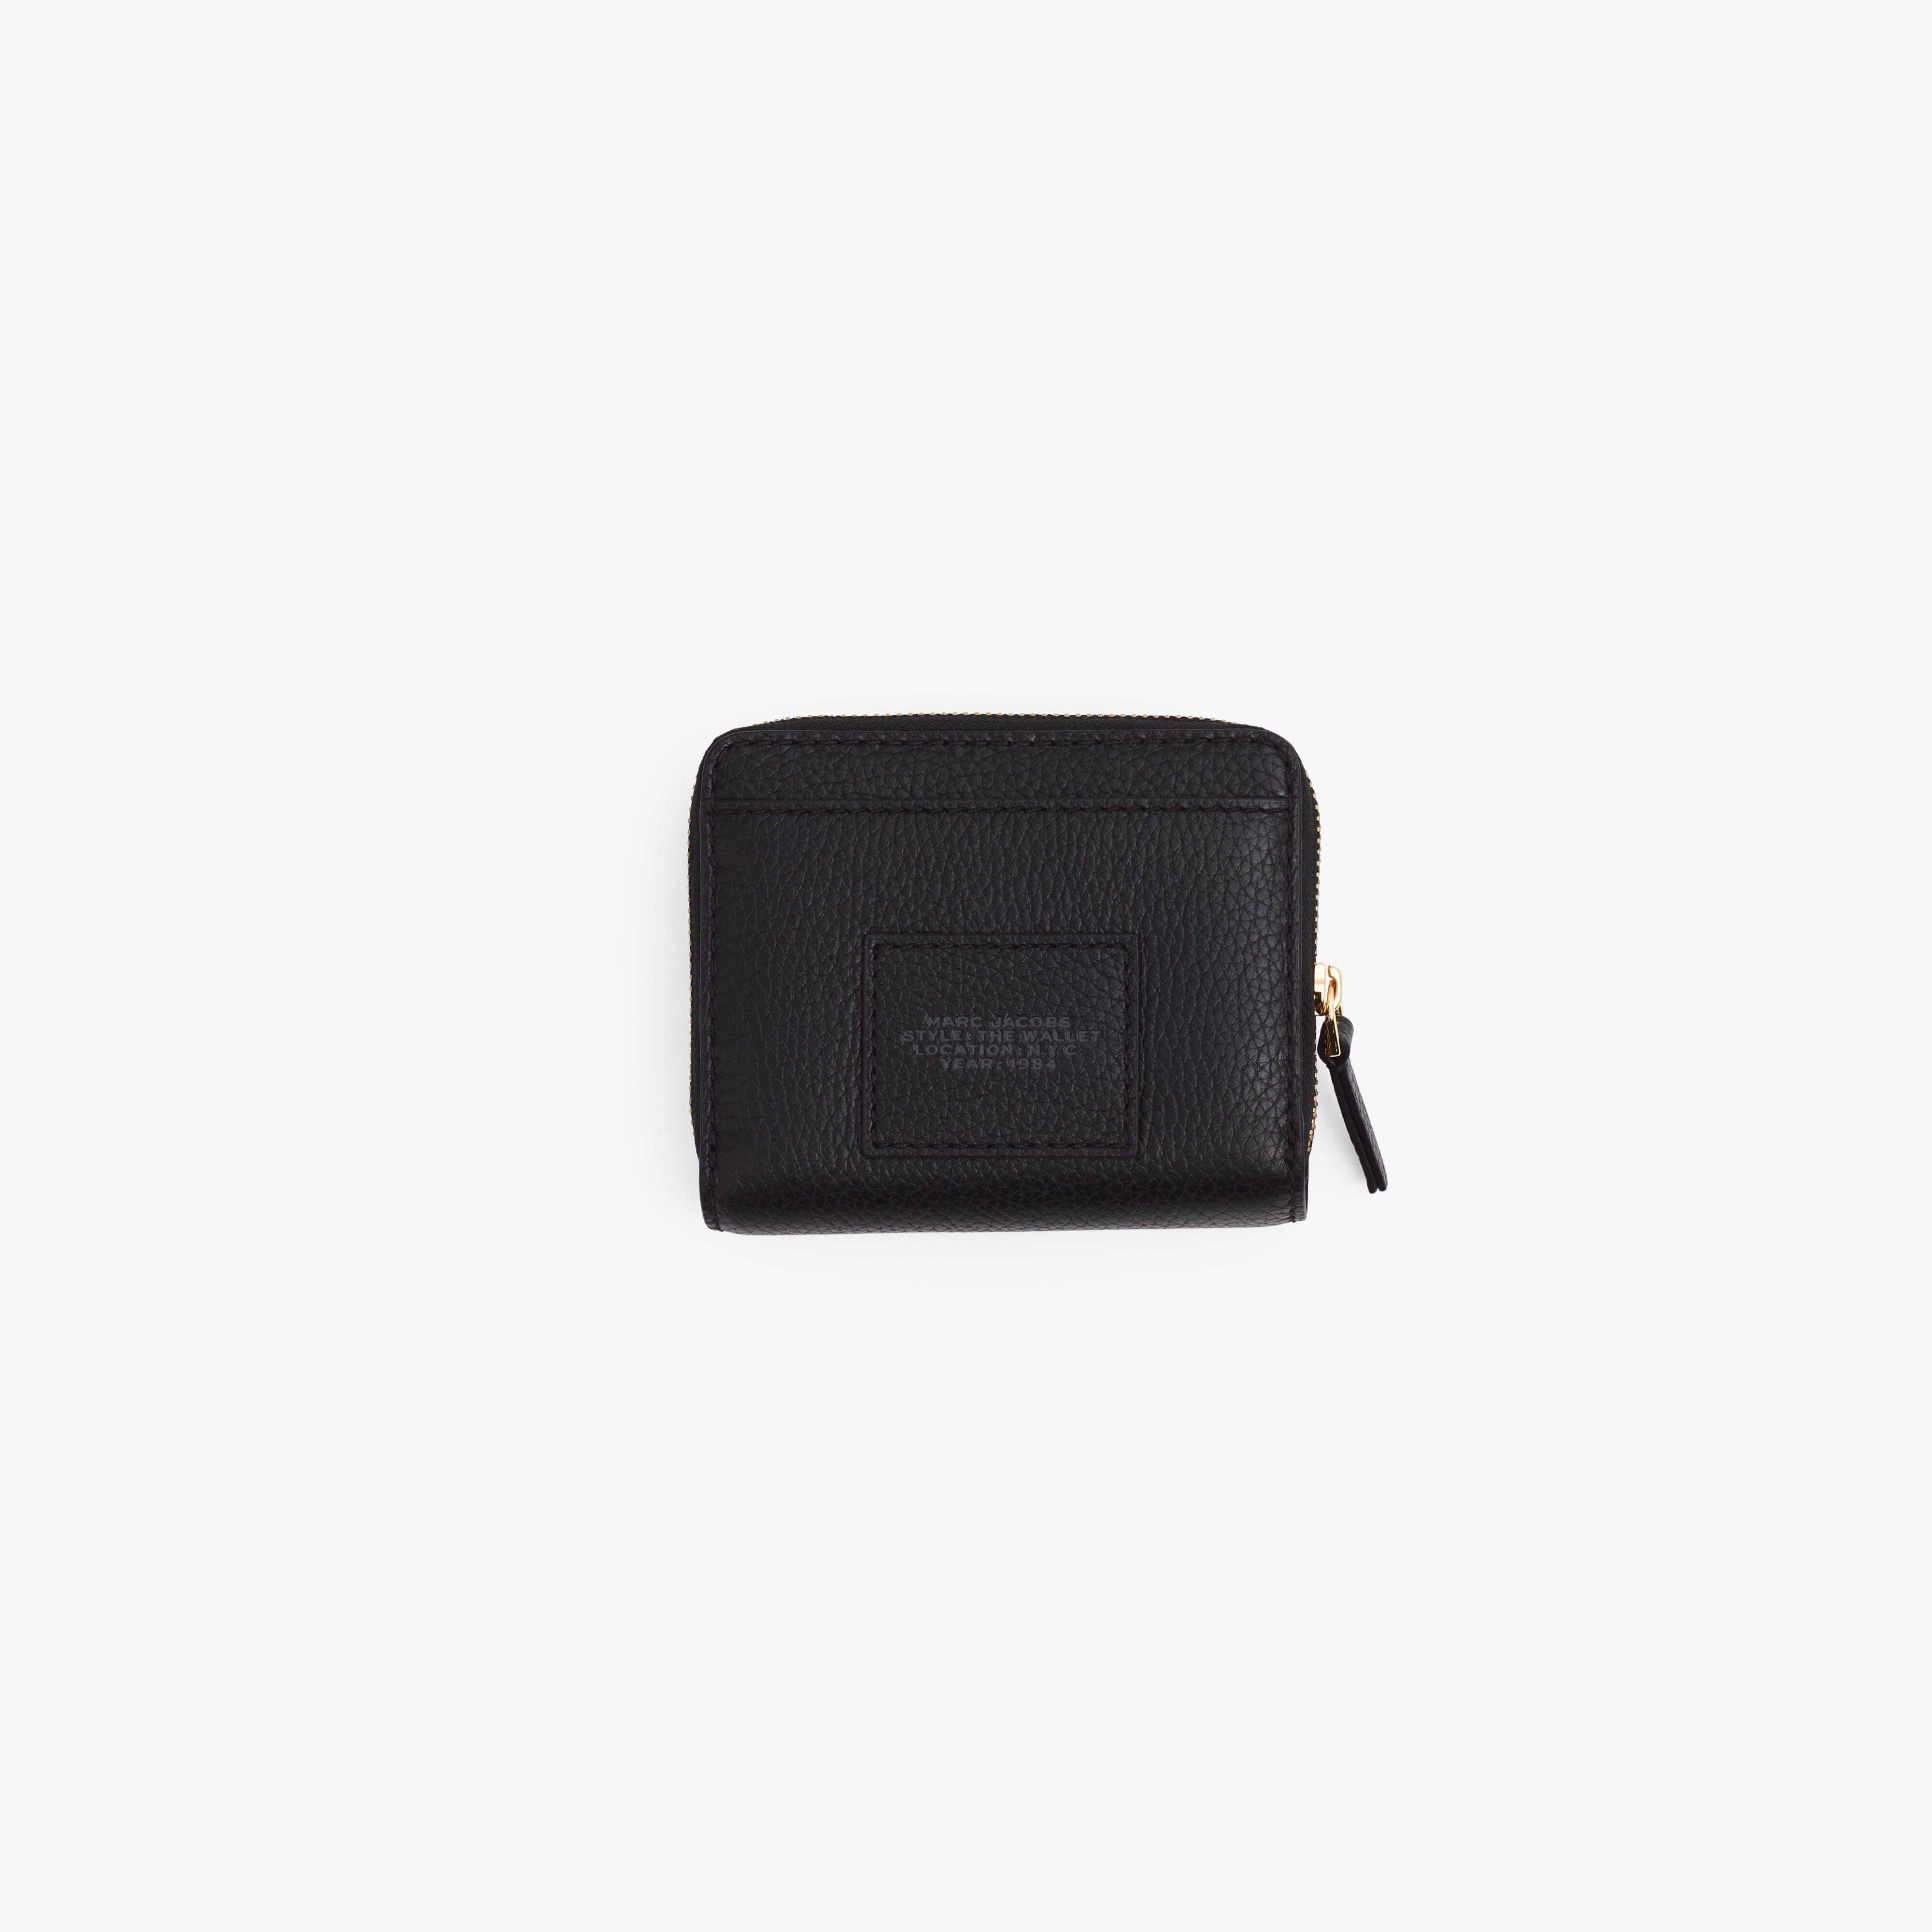 MARC JACOBS - Mini Compact Wallet 2R3SMP044S10 -001 - Portafogli - Nero Accessori Donna Marc Jacobs 